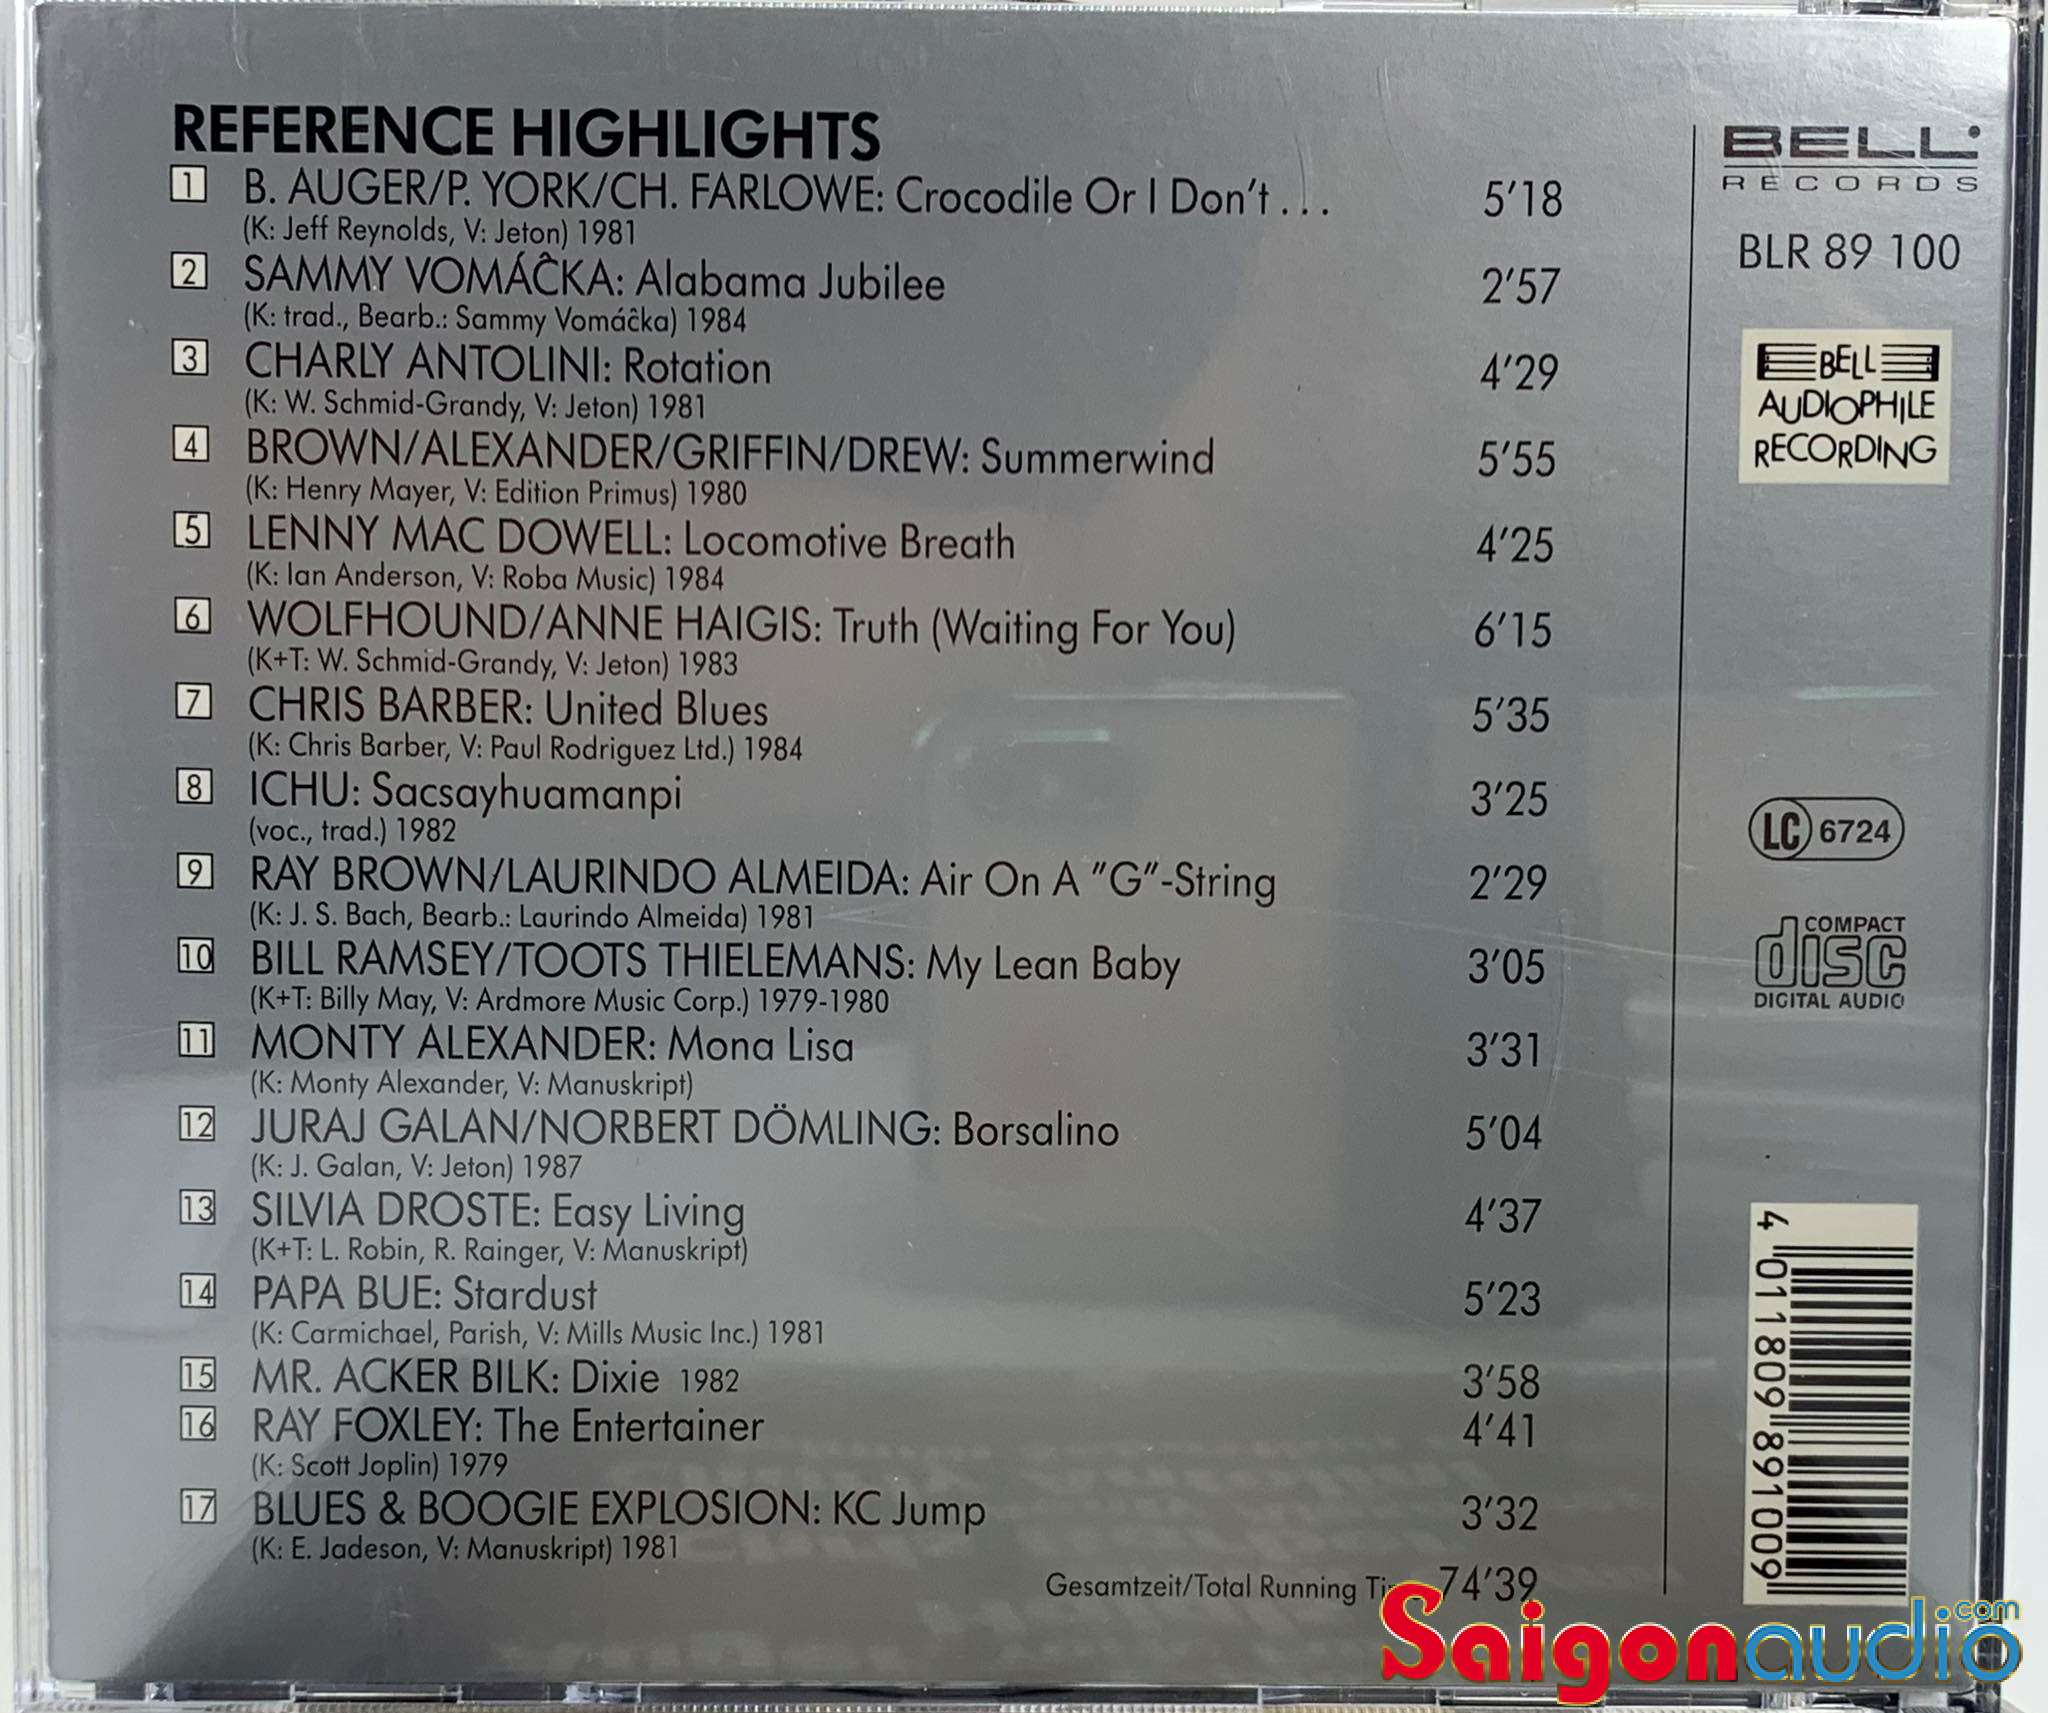 Đĩa CD gốc Reference No.1 - Bell Audiophile Recording (Free ship khi mua 2 đĩa CD cùng hoặc khác loại)